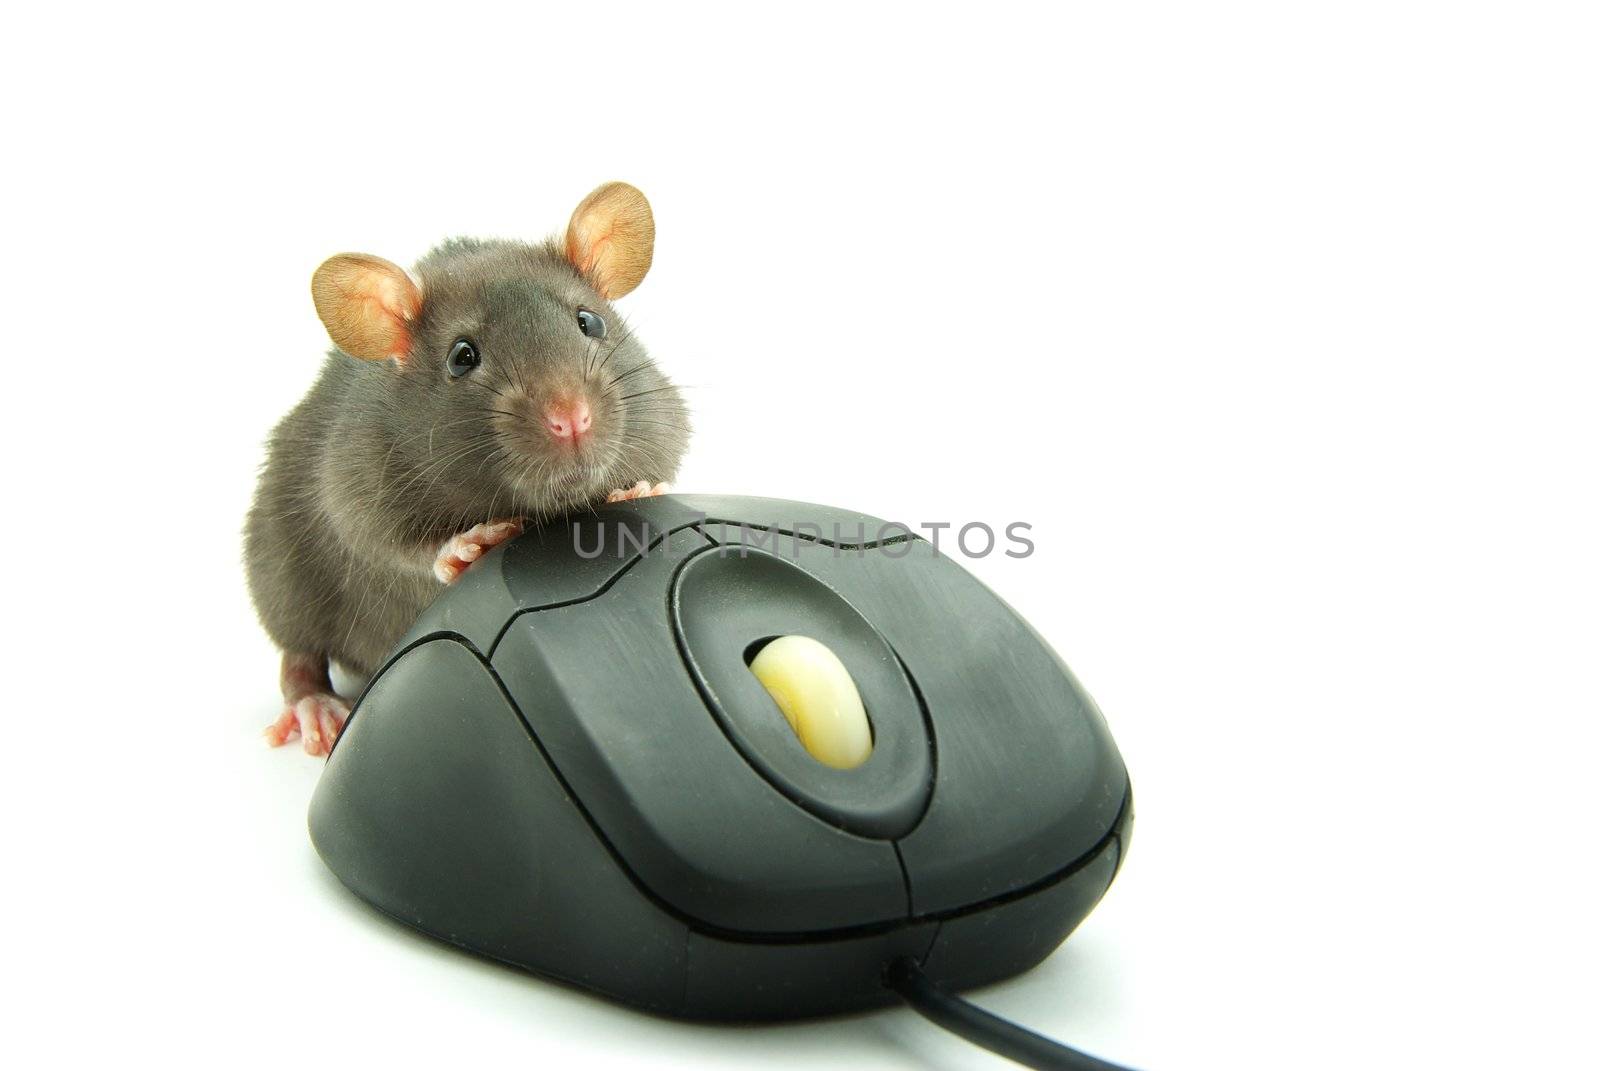  computer mouse  by Pakhnyushchyy